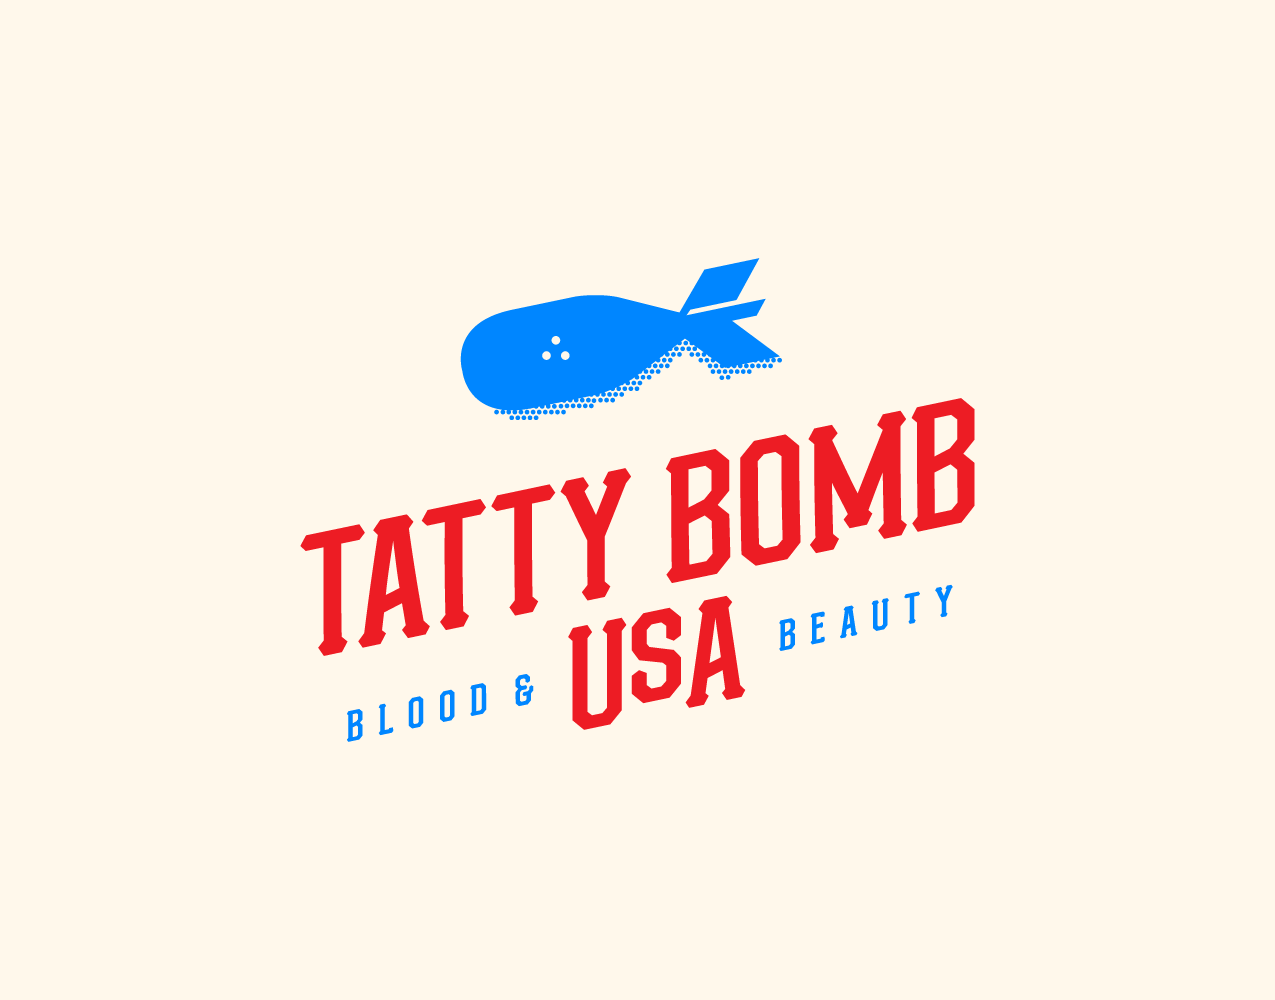 Logo Assets_tattybomb